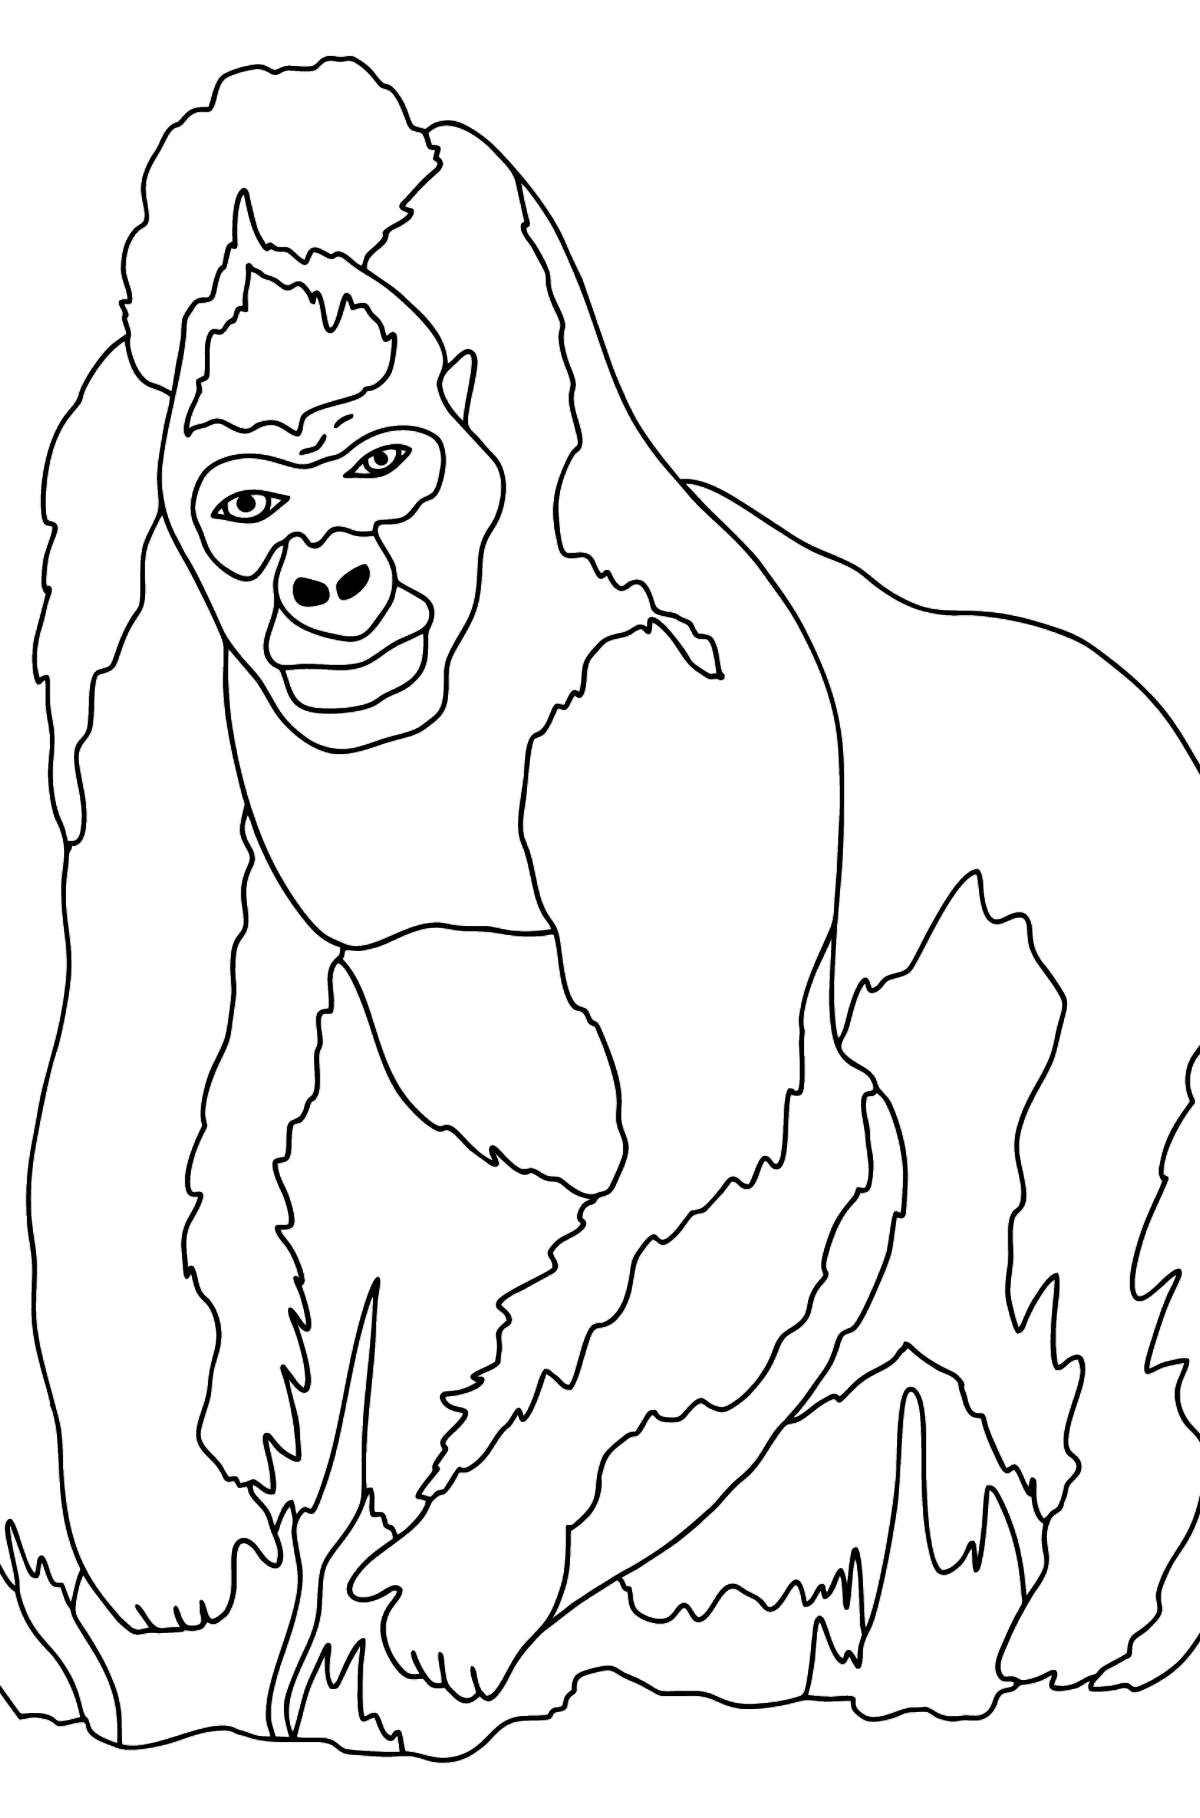 Dibujo para Colorear - Un Gorila Peludo - Dibujos para Colorear para Niños